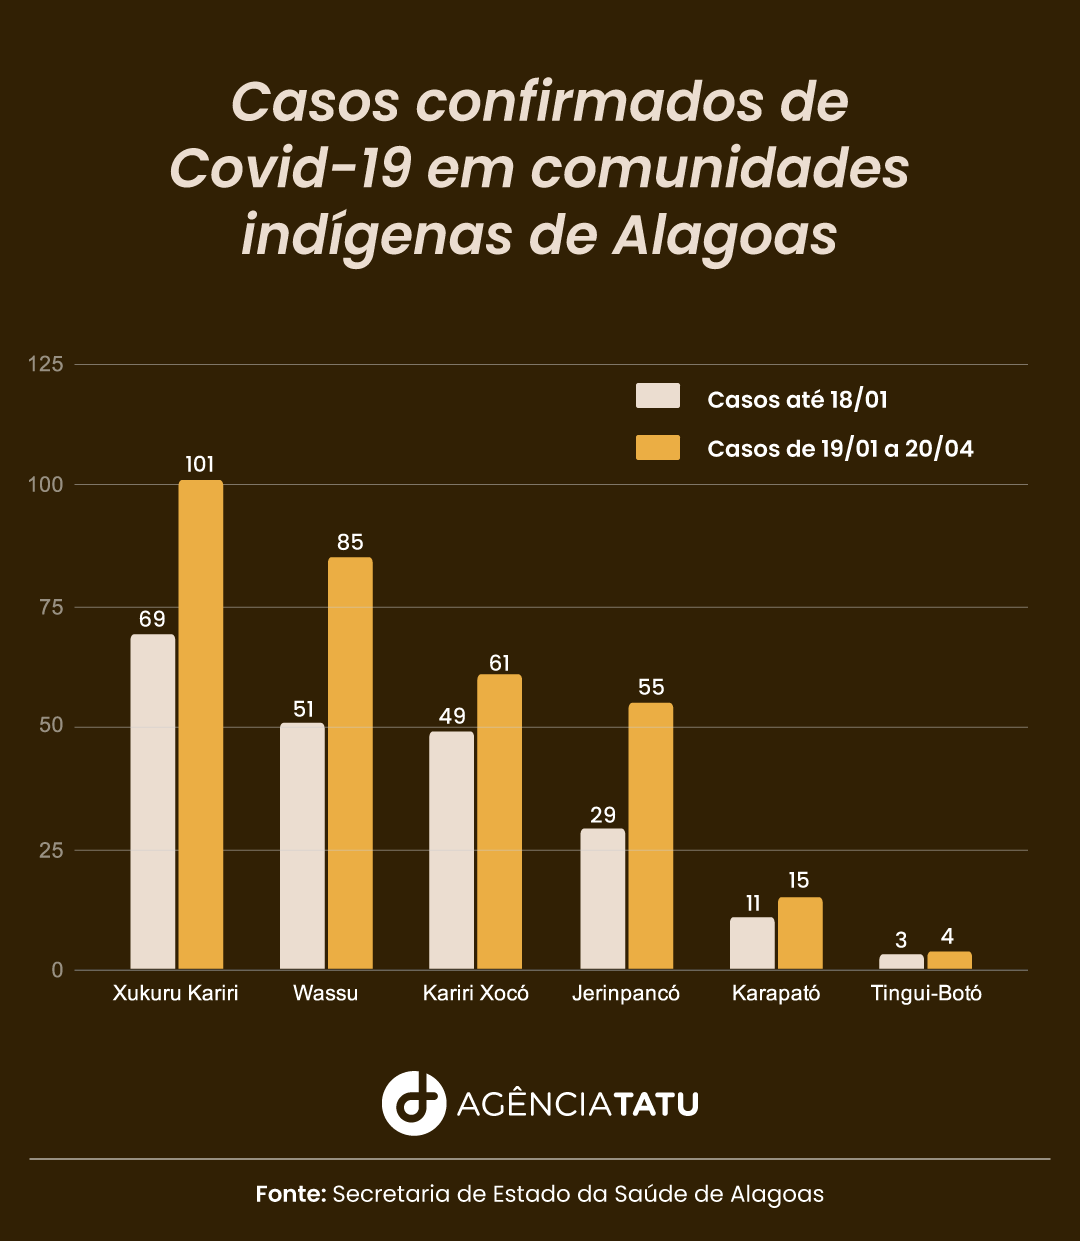 Covid 19 Comunidades indigenas - 60% das mortes por Covid-19 nas comunidades indígenas de AL são de pessoas com menos de 60